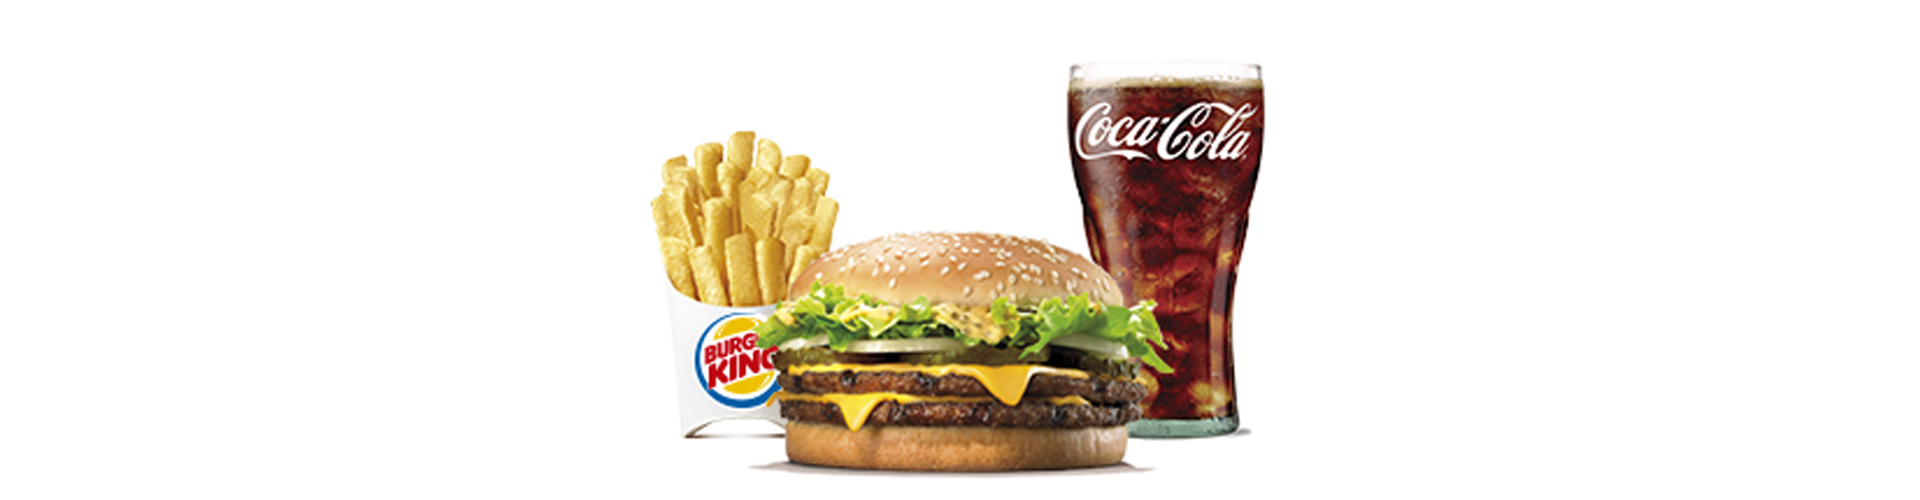 menu-big-king-burgerking-40001712-nestea-aros